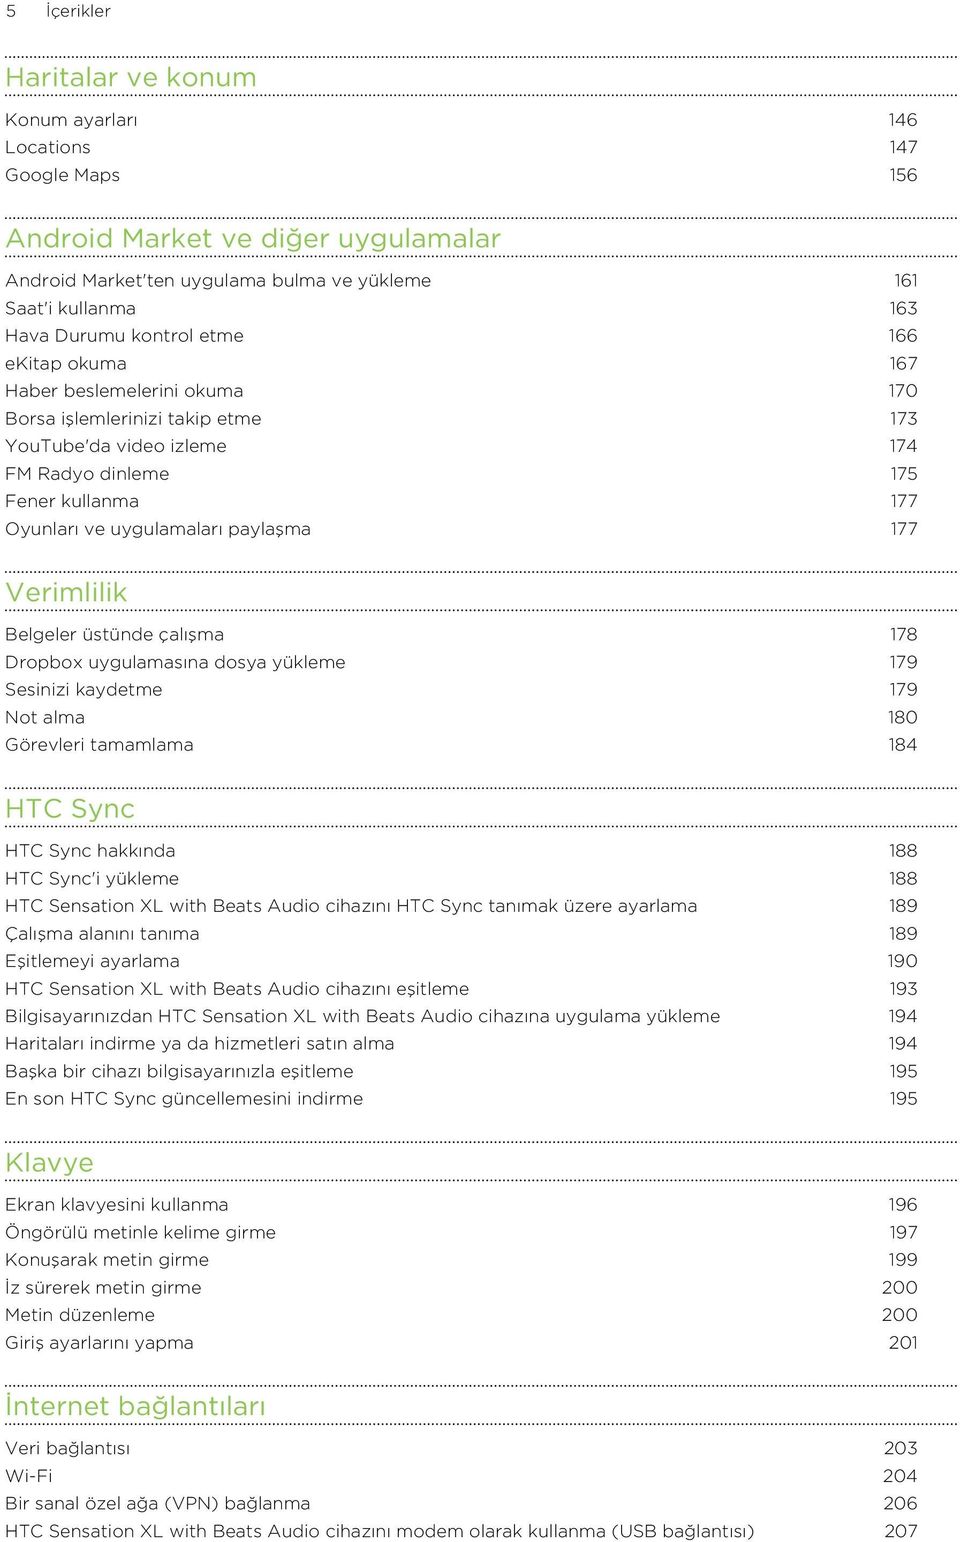 paylaşma 177 Verimlilik Belgeler üstünde çalışma 178 Dropbox uygulamasına dosya yükleme 179 Sesinizi kaydetme 179 Not alma 180 Görevleri tamamlama 184 HTC Sync HTC Sync hakkında 188 HTC Sync'i